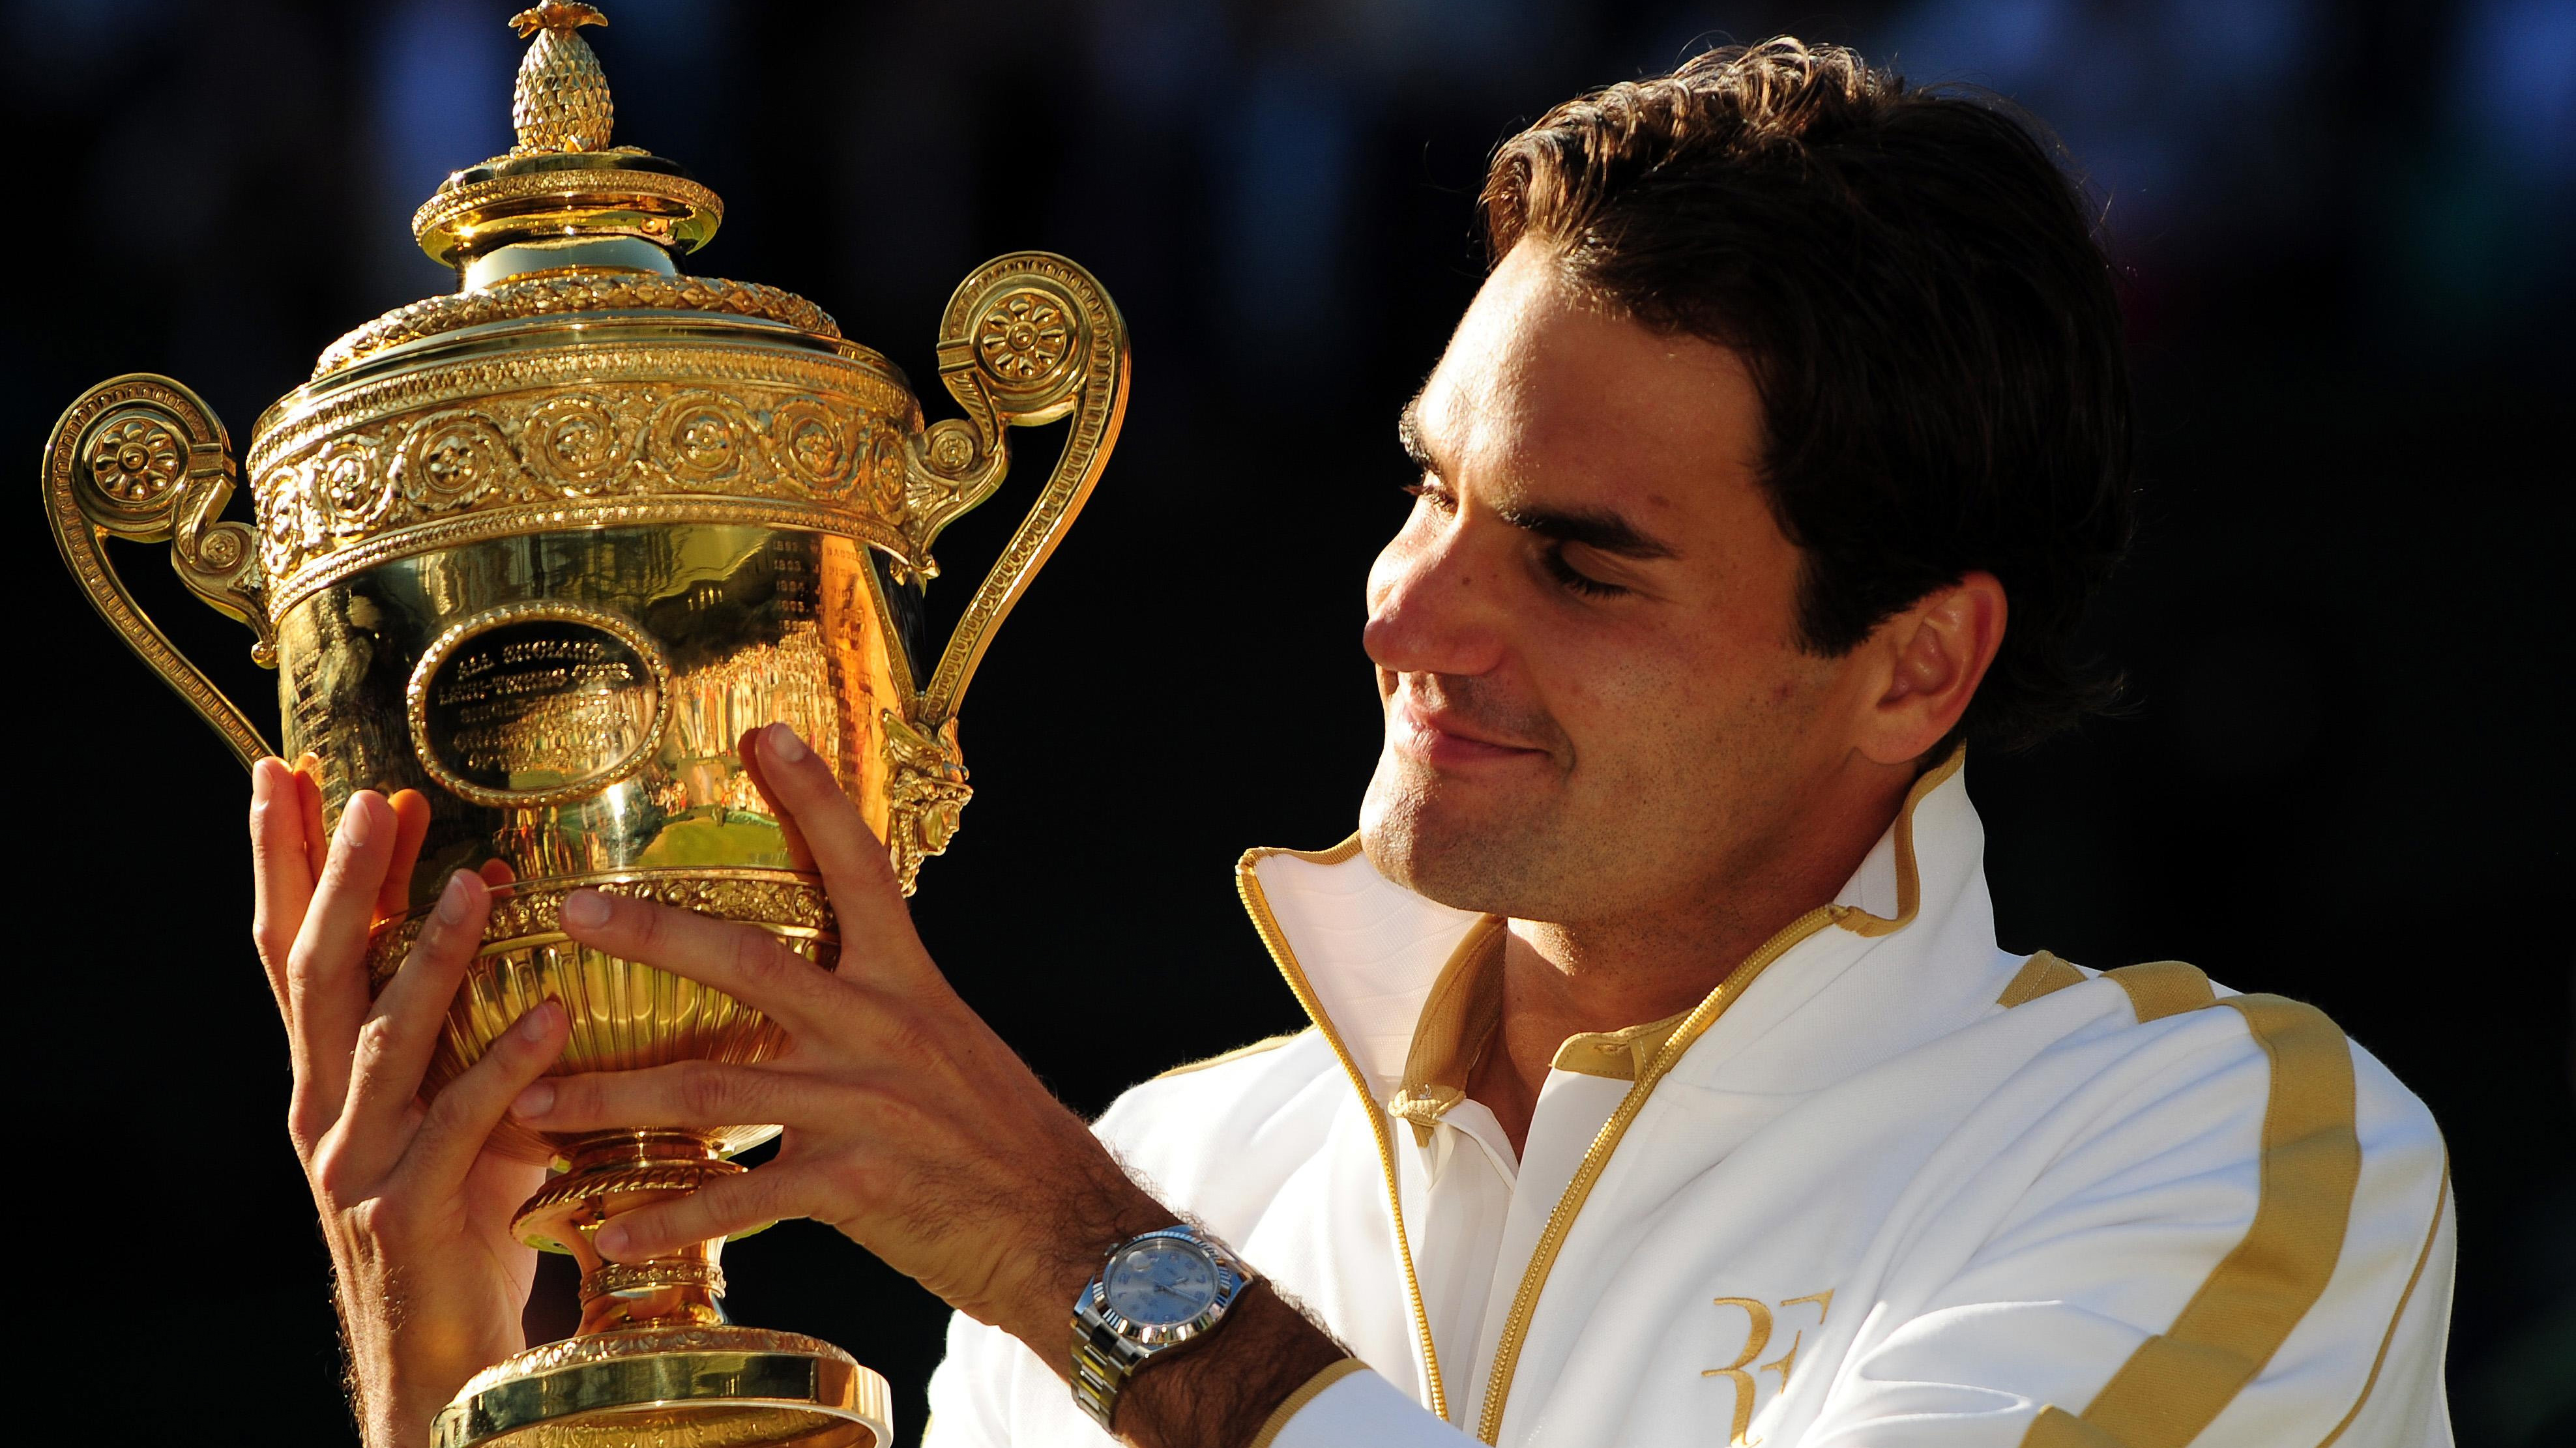 Retraite de Roger Federer : Coupe Laver